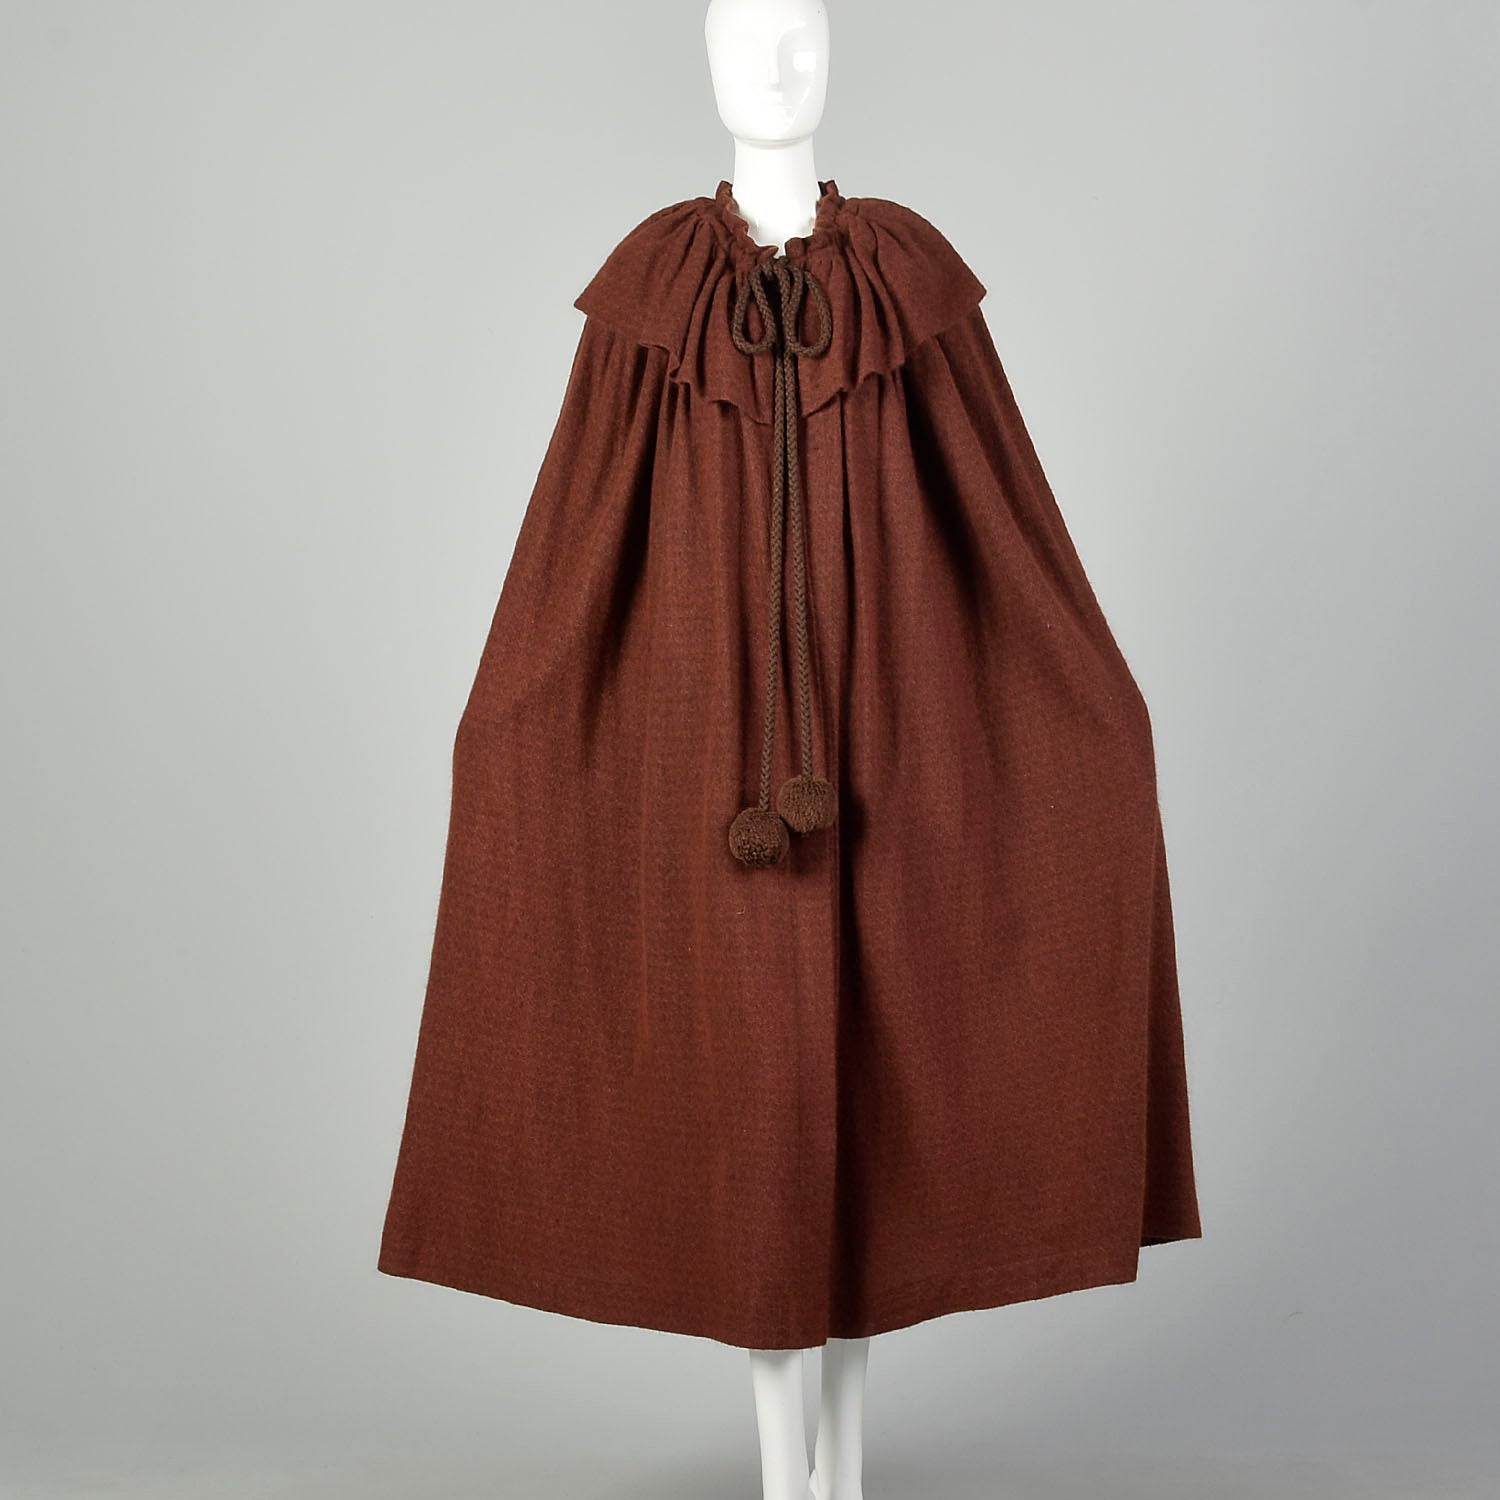 1970s Yves Saint Laurent Rive Gauche Cape Cashmere Angora Knit Soft Autumn Designer Vintage Outerwear